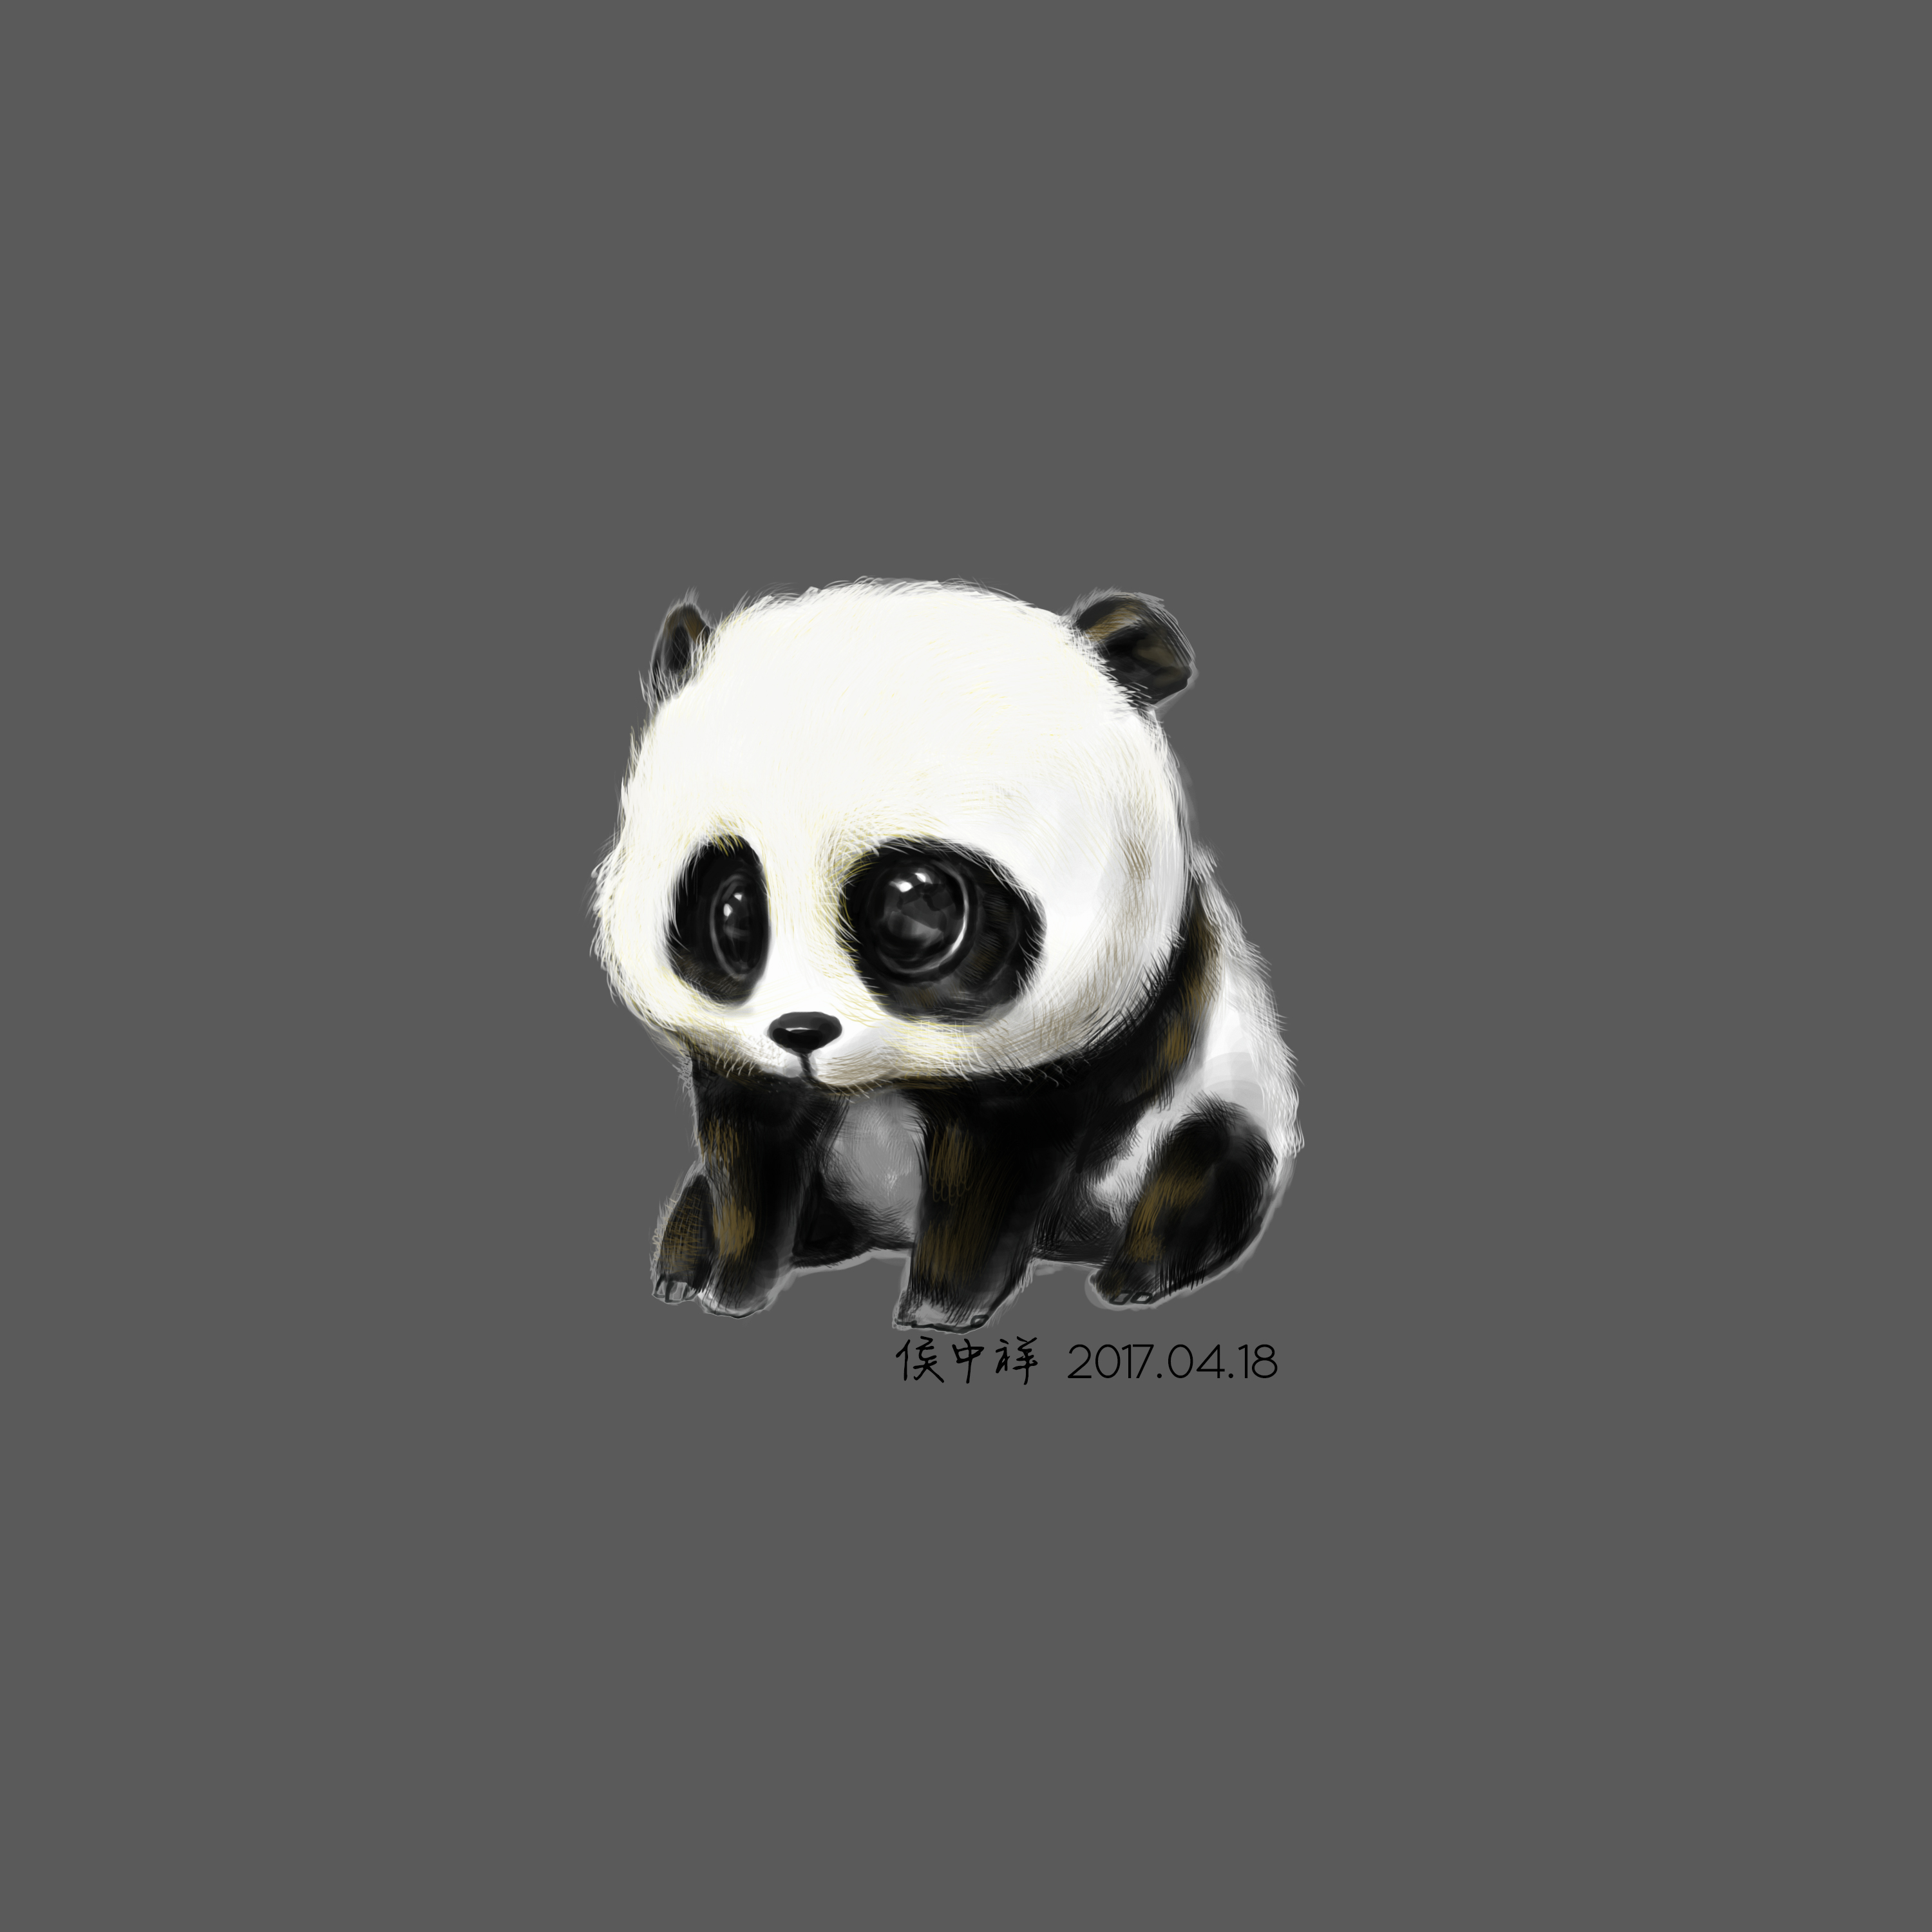 分享一只萌萌哒的小熊猫